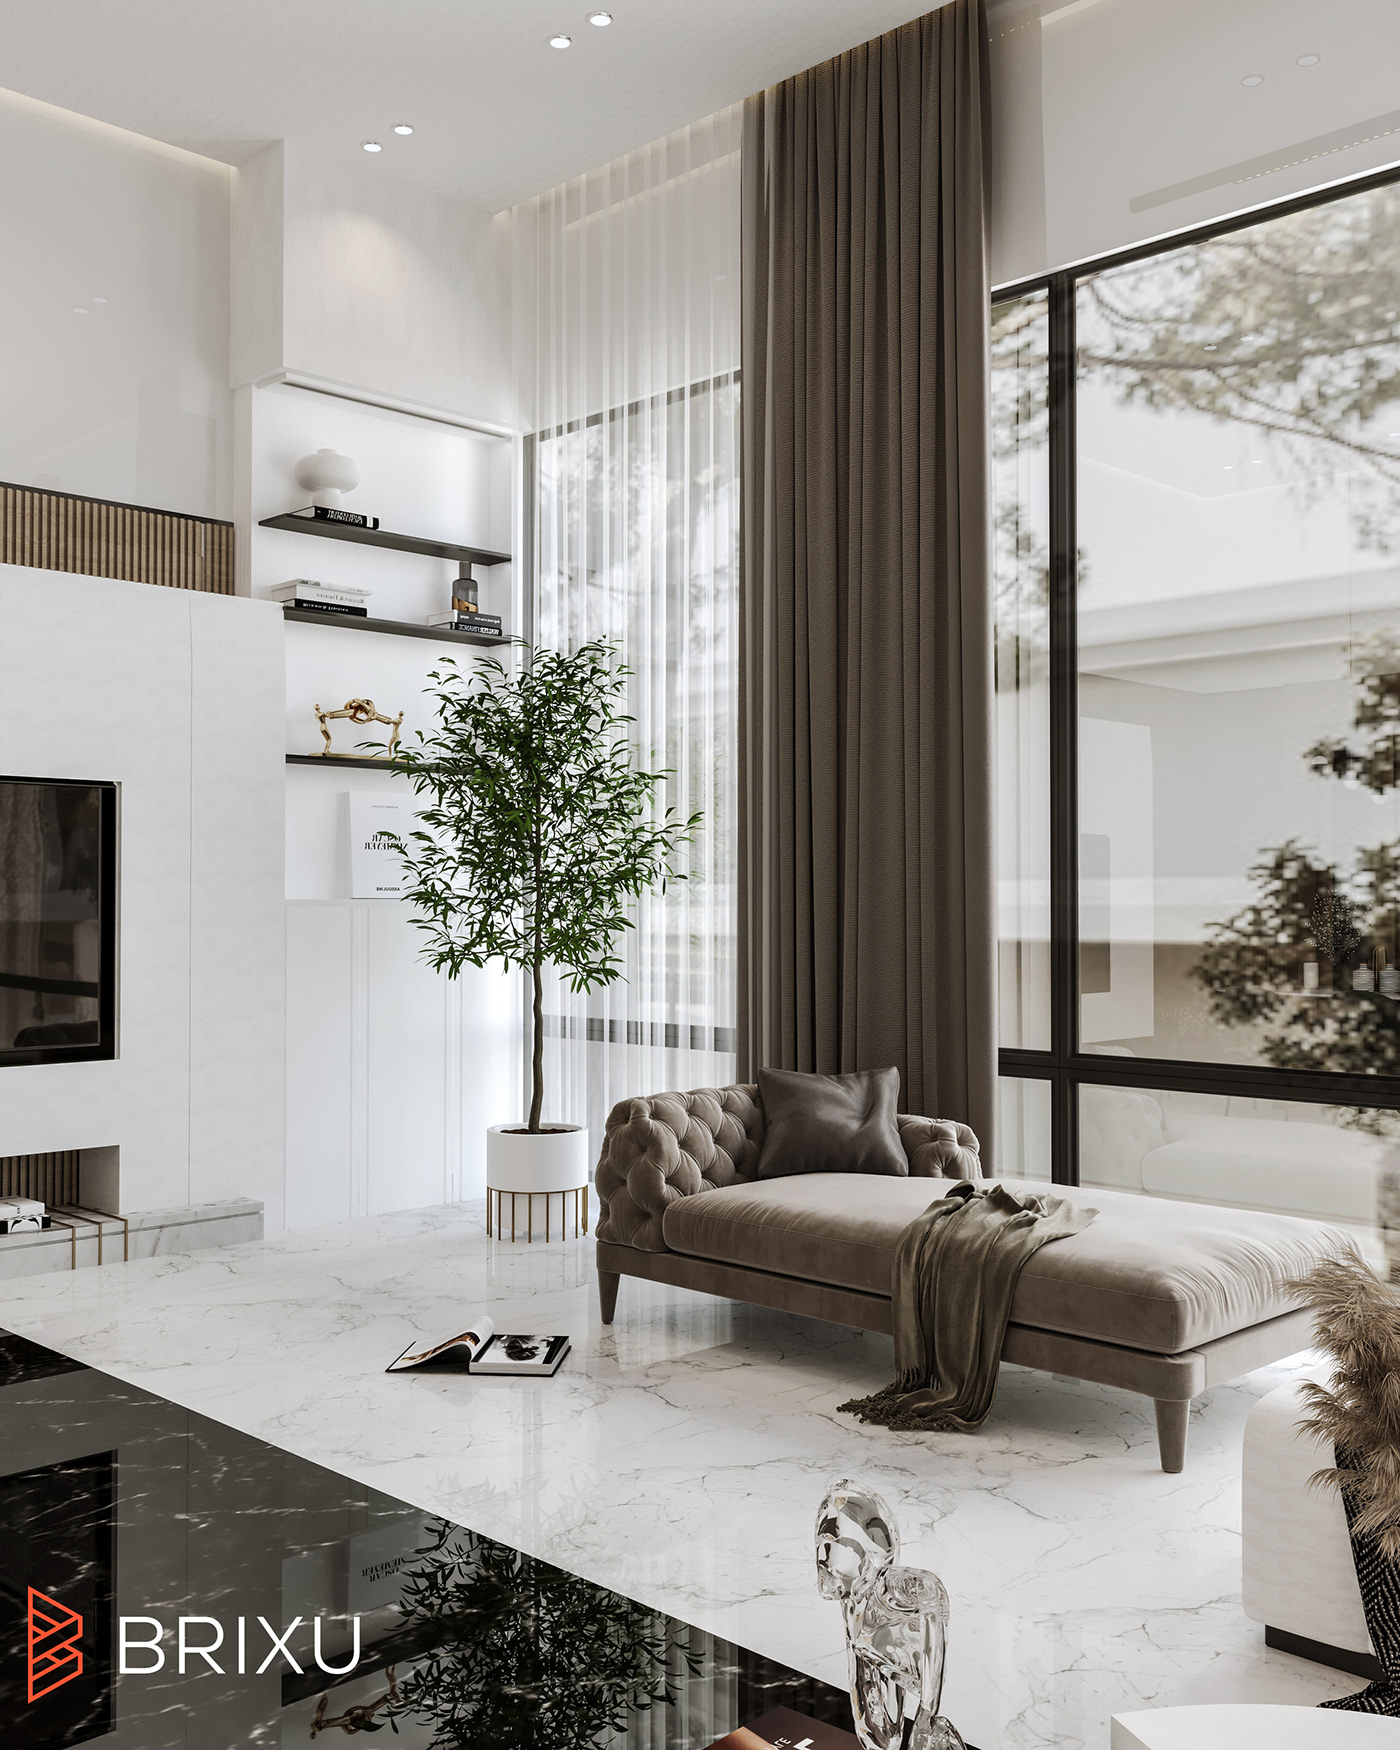 3ds max architecture CGI corona Interior interior design  luxury Render visualization